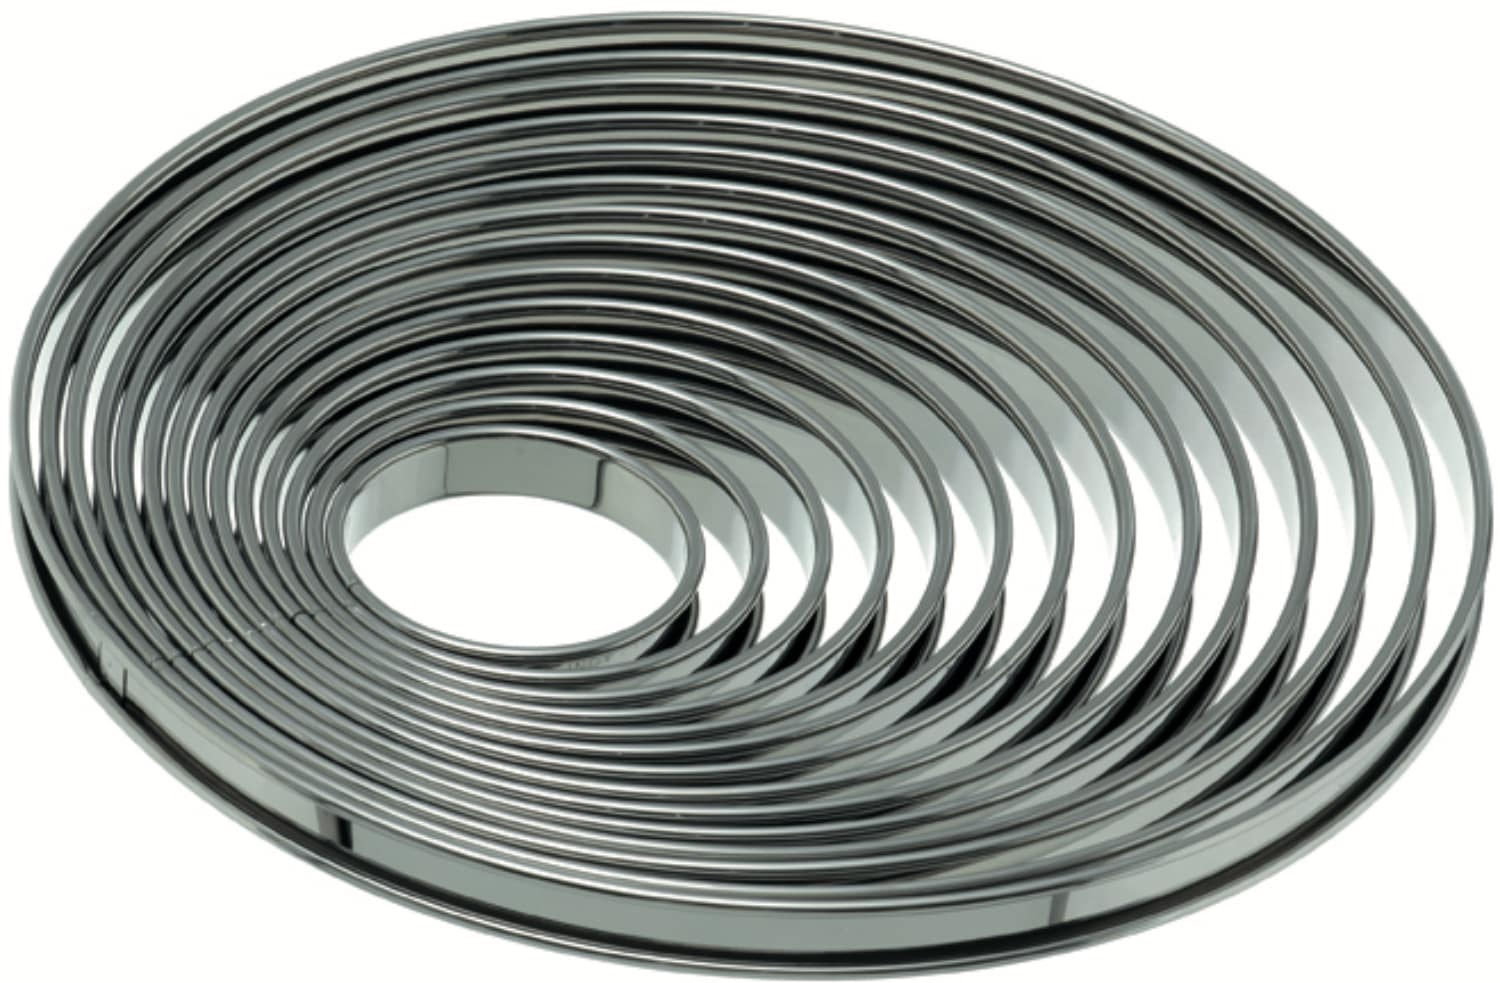 Tart rings folded rim stainless steel 162080